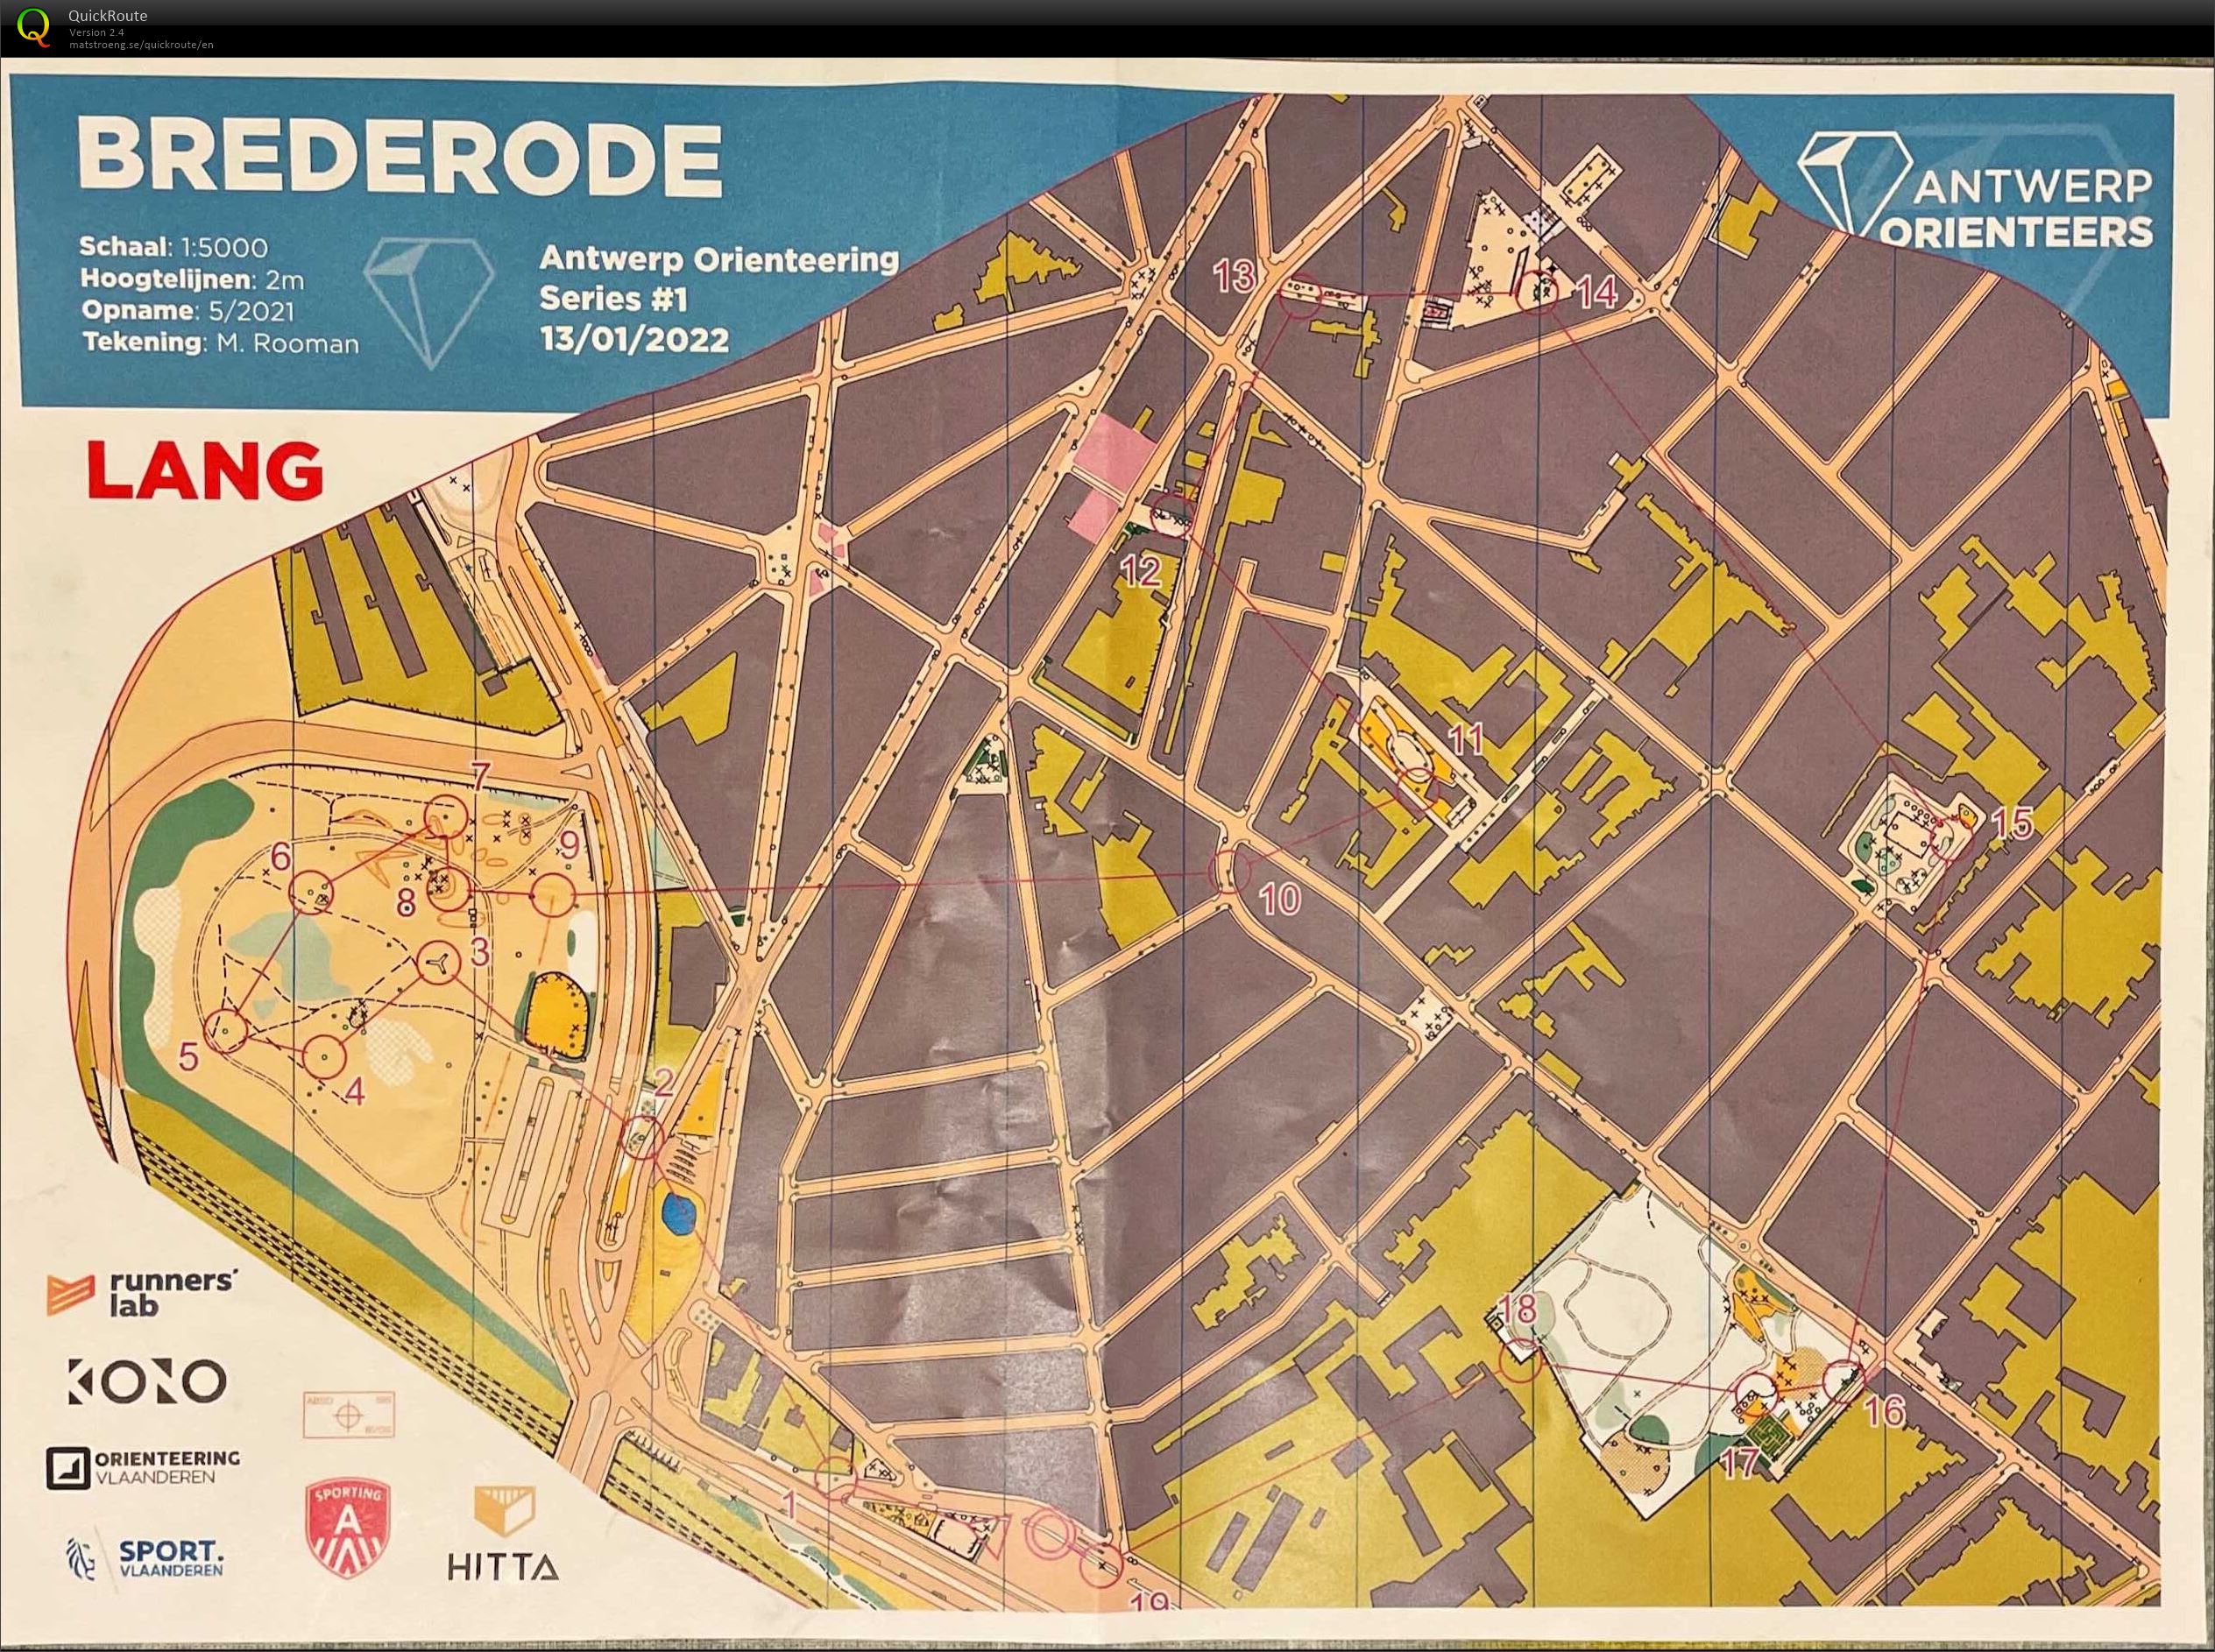 Antwerp Orienteering Series - Brederode - Lang (13-01-2022)